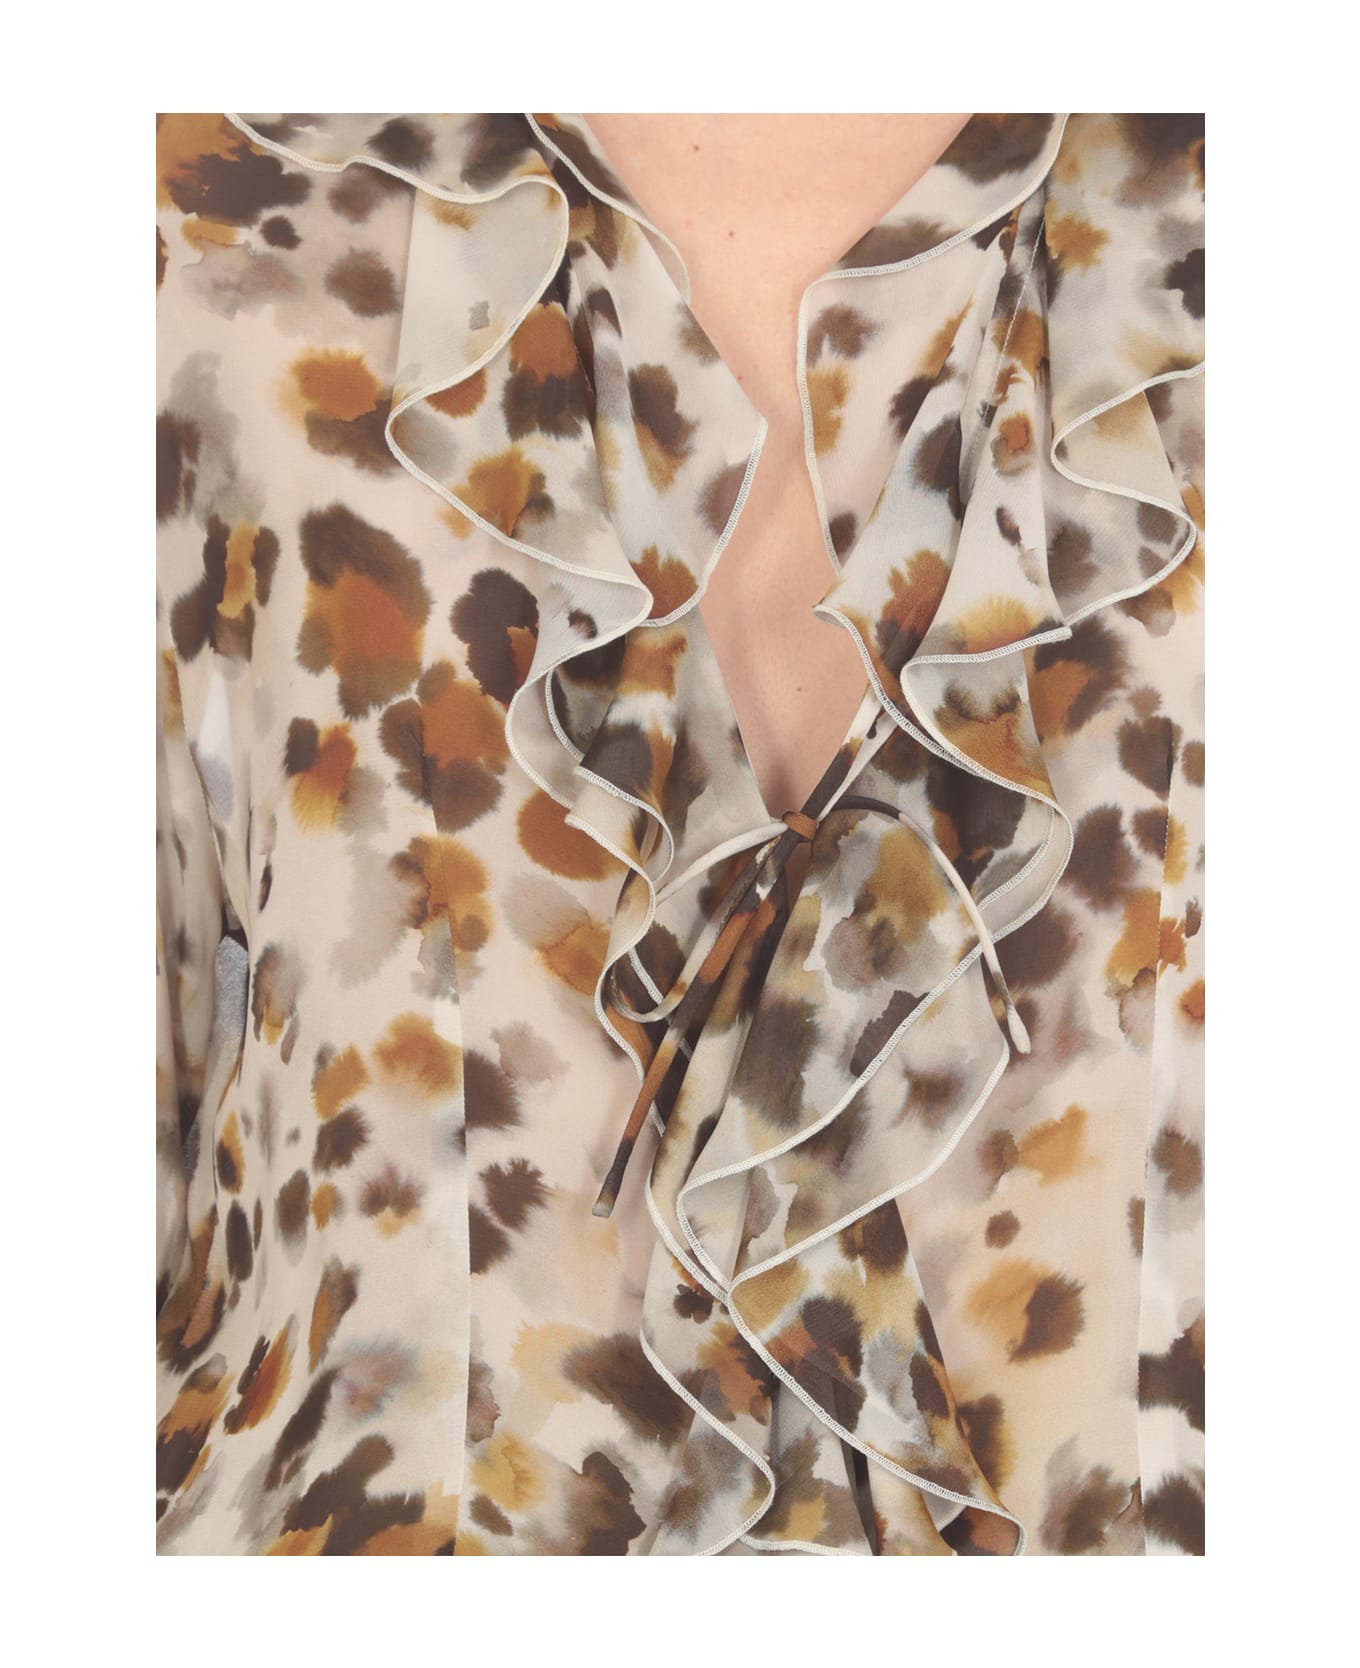 MSGM Watercolour Leopard Blouse Shirt - Beige